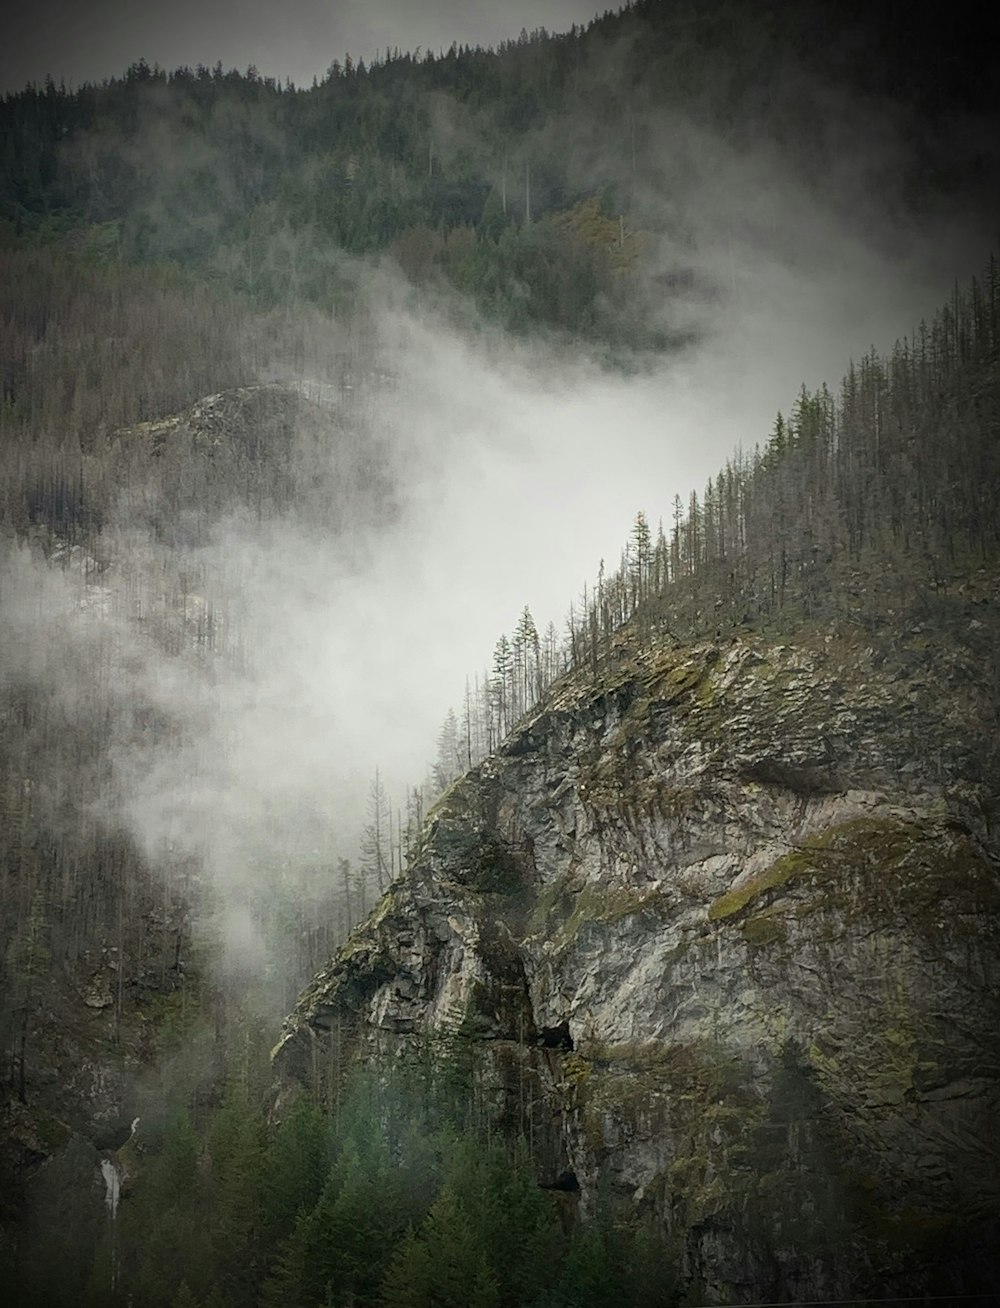 montagna verde e marrone coperta di nebbia